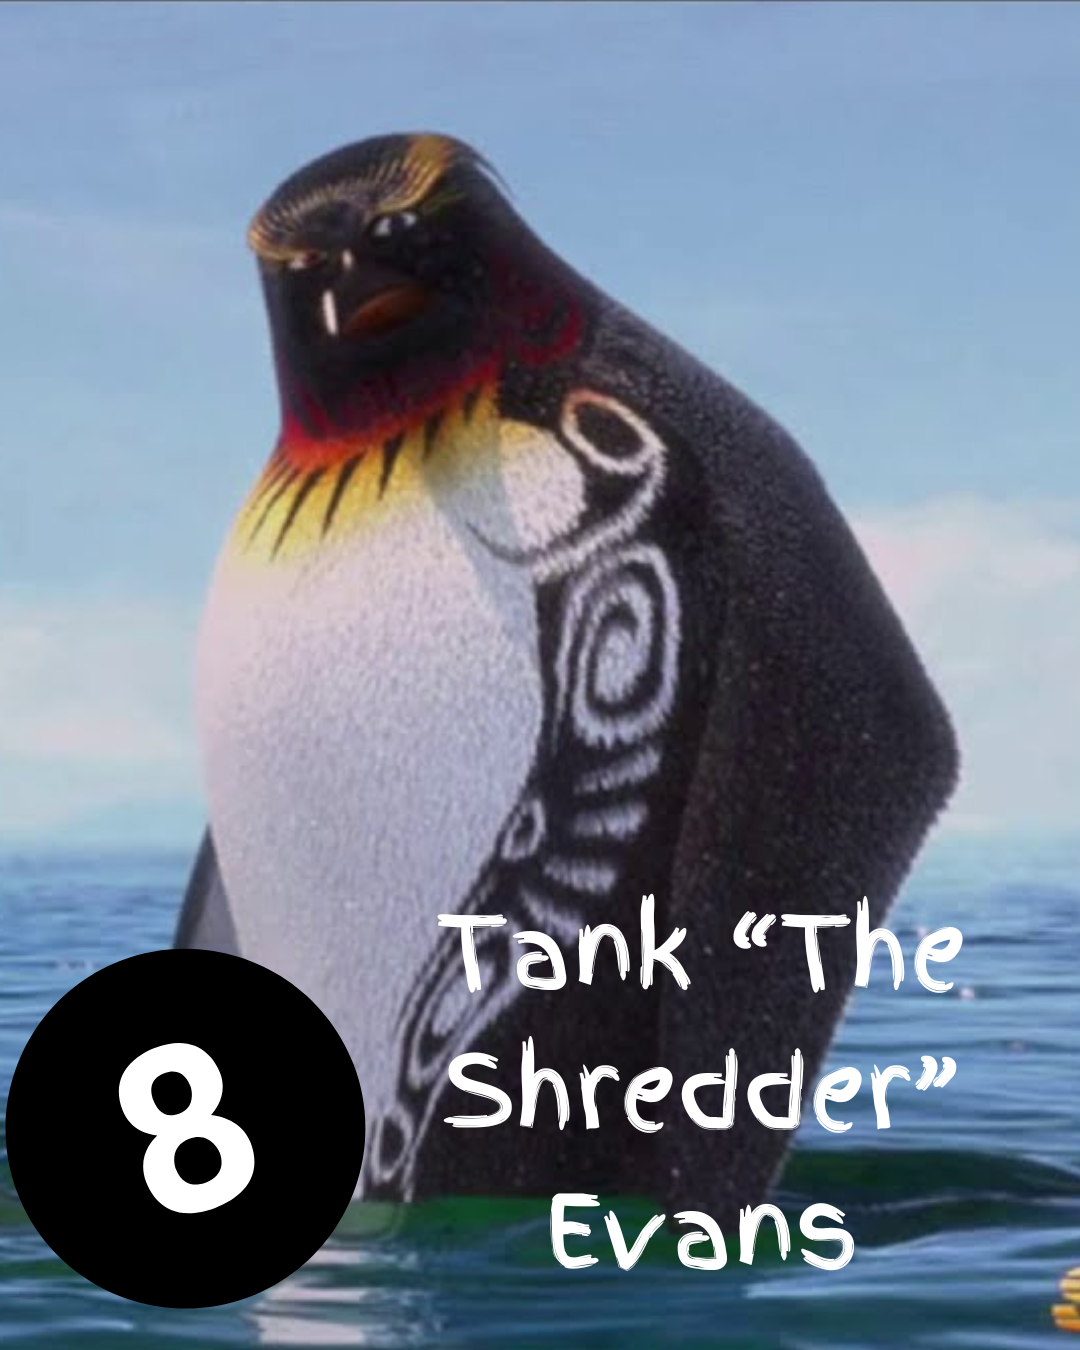 8. Tank “The Shredder” Evans